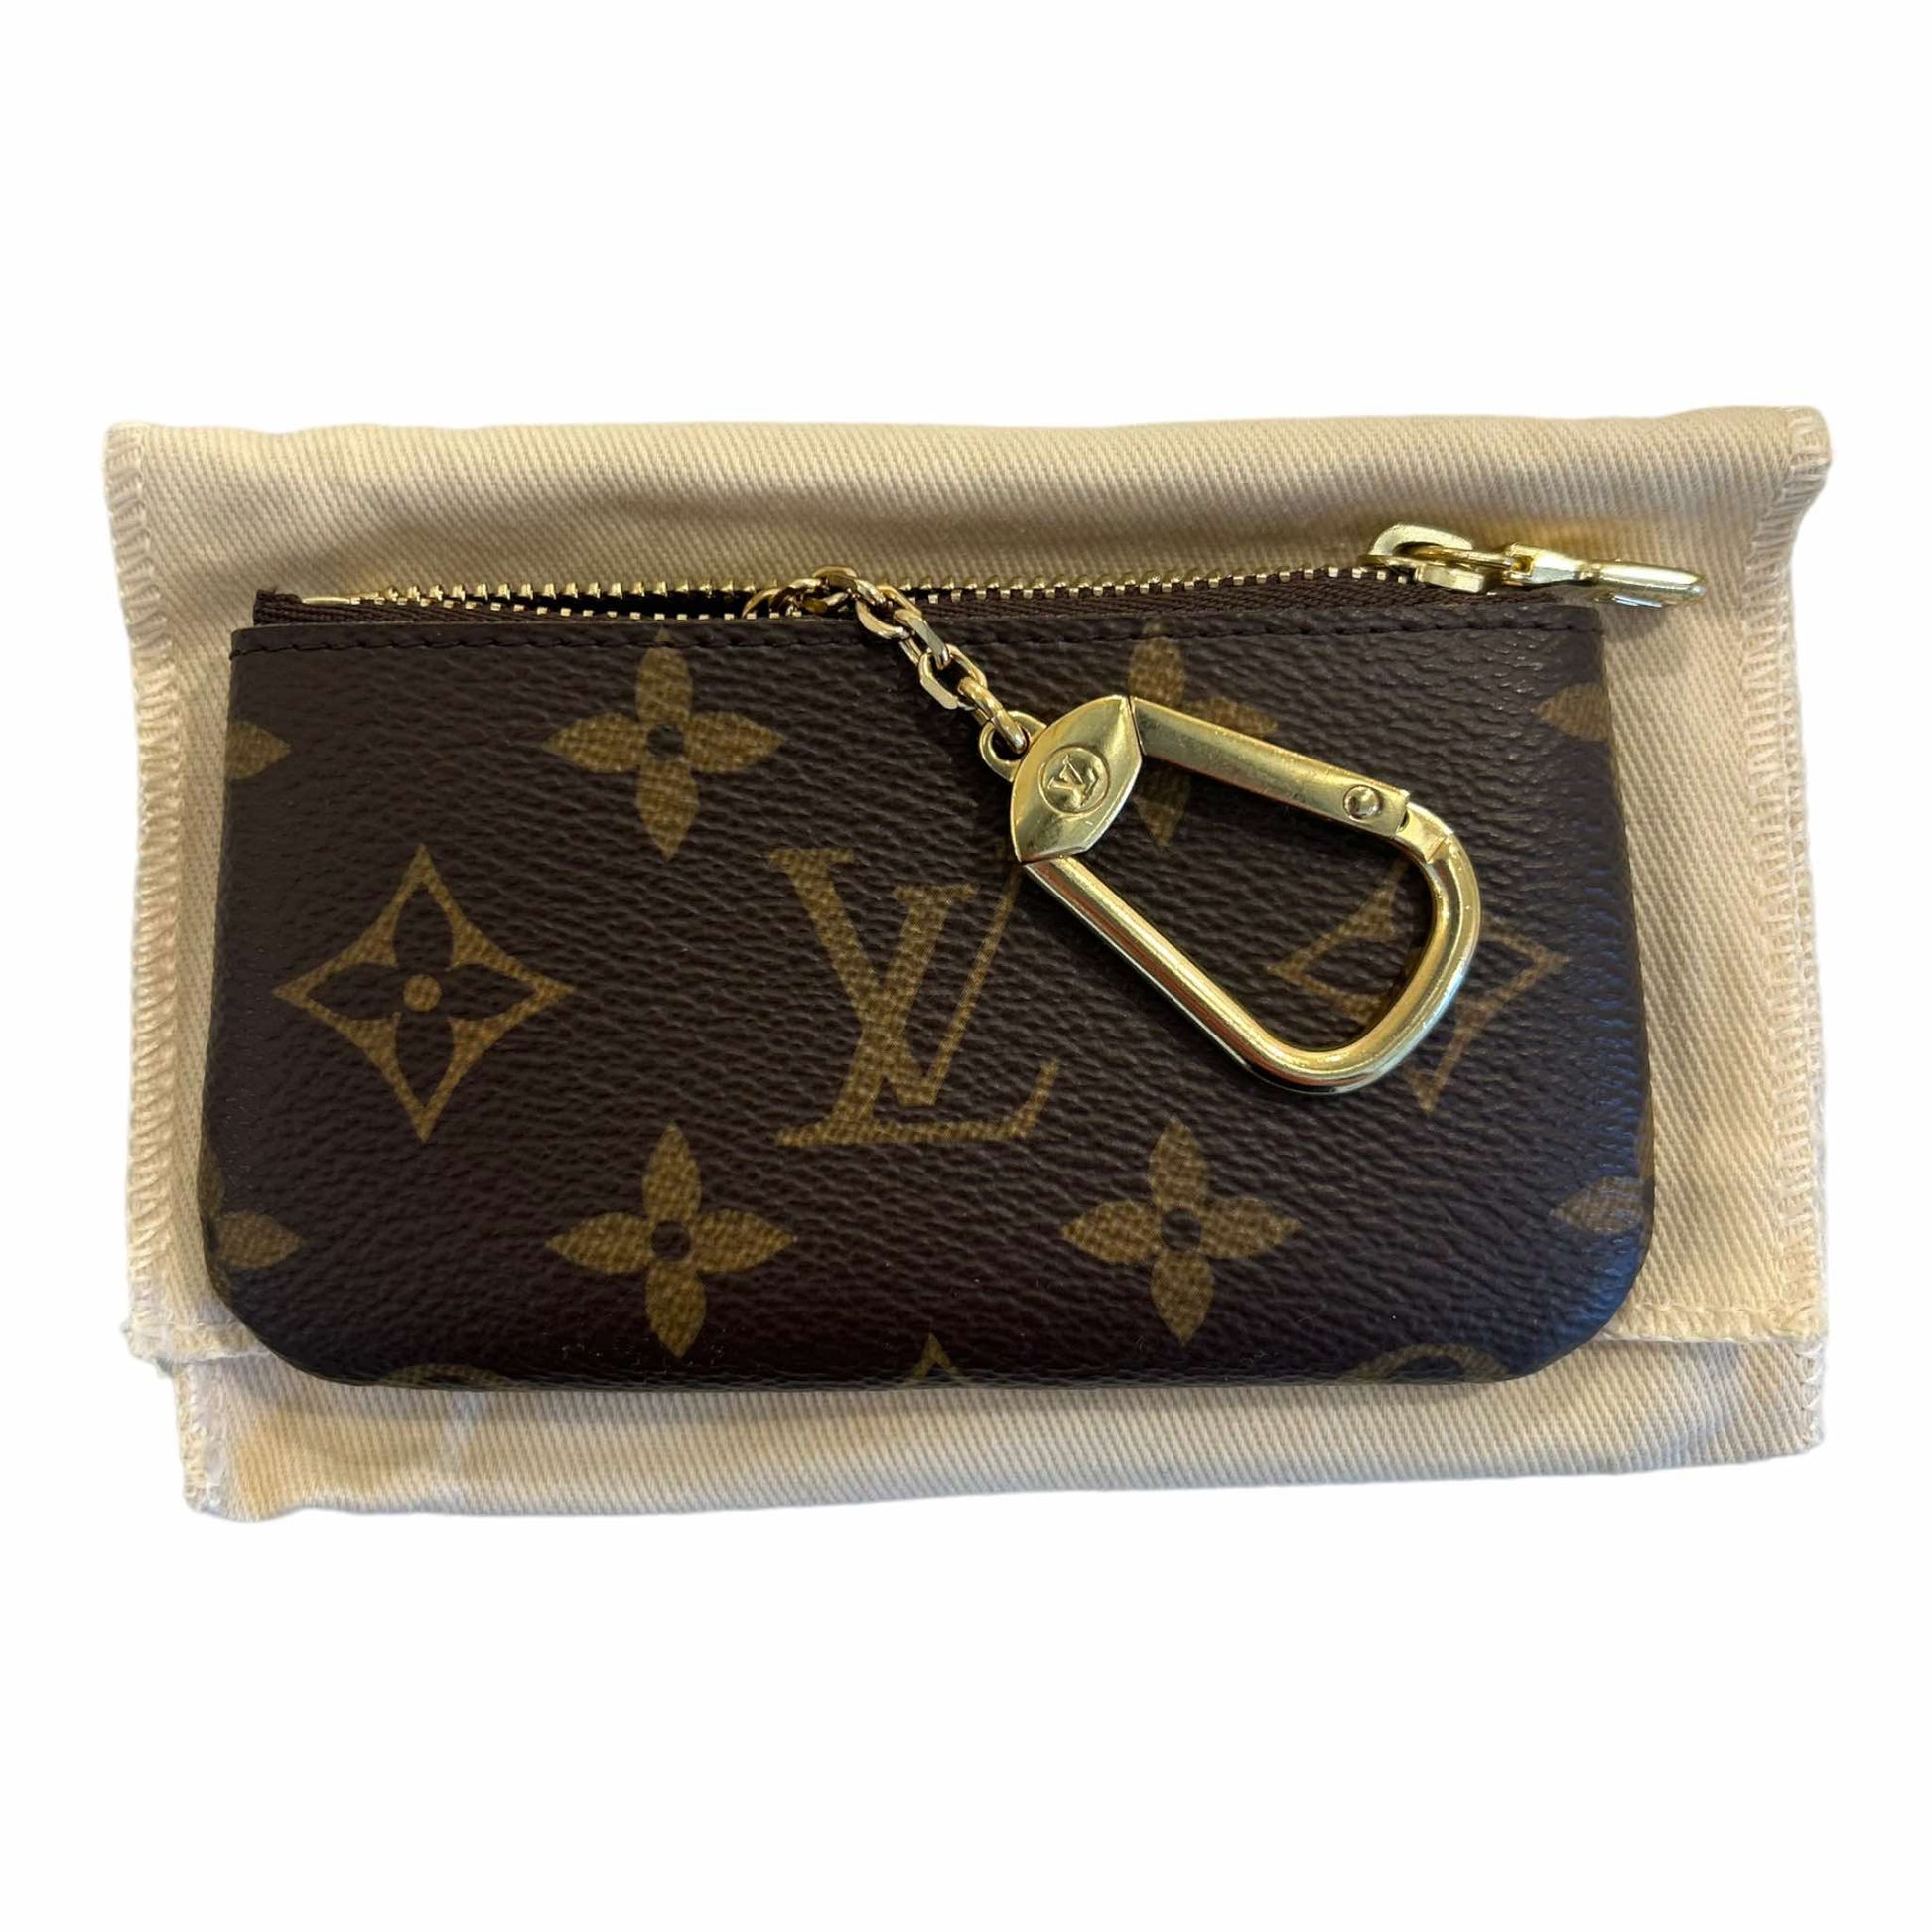 Louis Vuitton M62650 Key Pouch Monogram  Louis vuitton key pouch, Louis  vuitton, Louis vuitton handbags crossbody